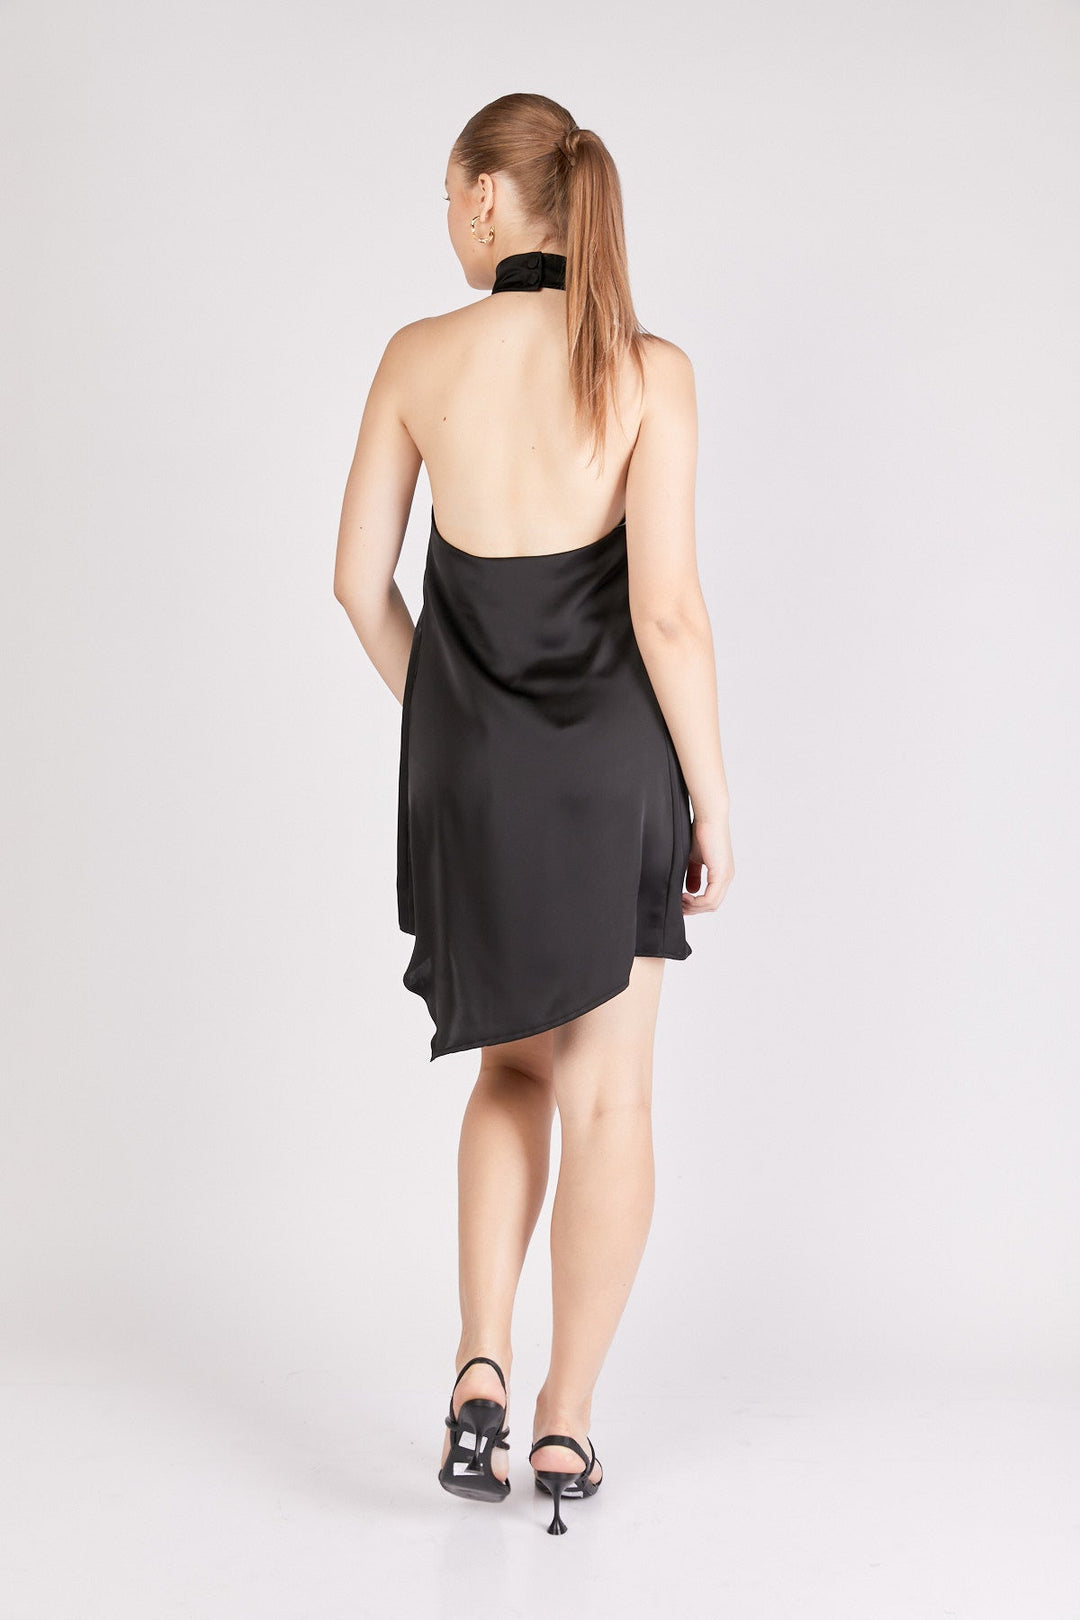 שמלת מיני אסטיה בצבע שחור - Re